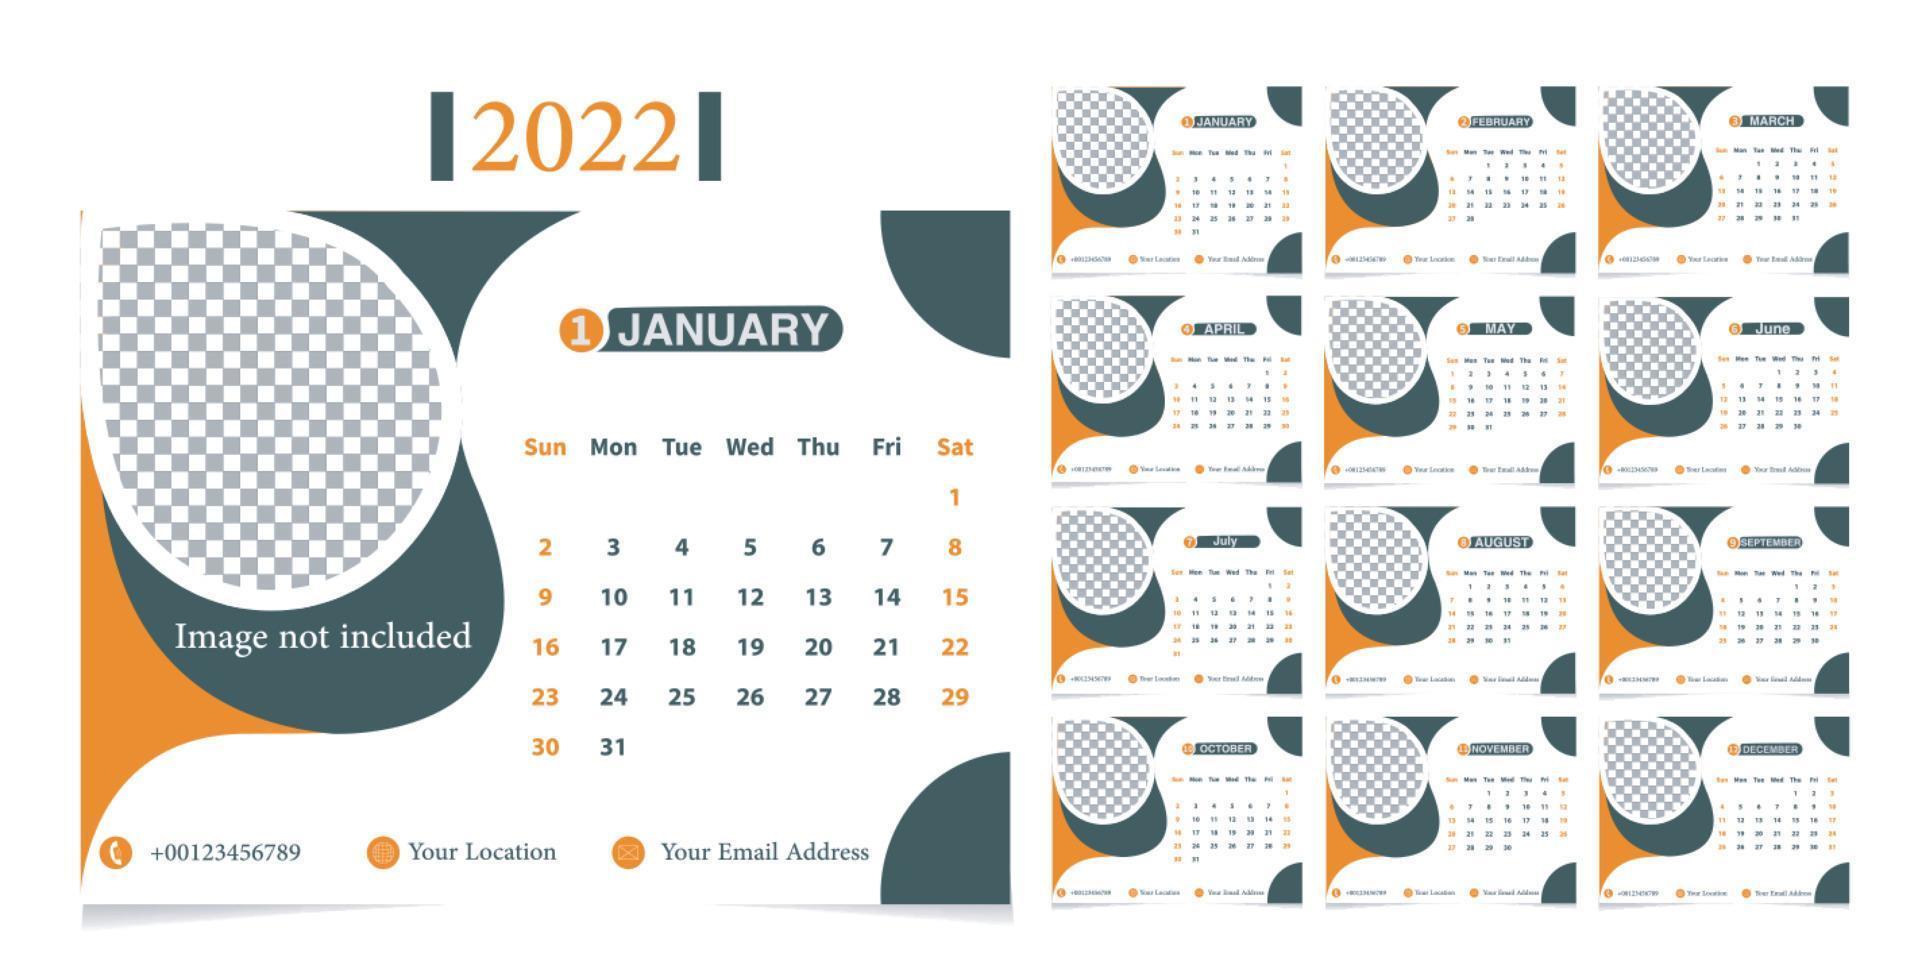 kalendersjabloon voor het jaar 2022. helder ontwerp. een reeks pagina's voor 12 maanden van 2022. vectorillustratie. de week begint op zondag. vector